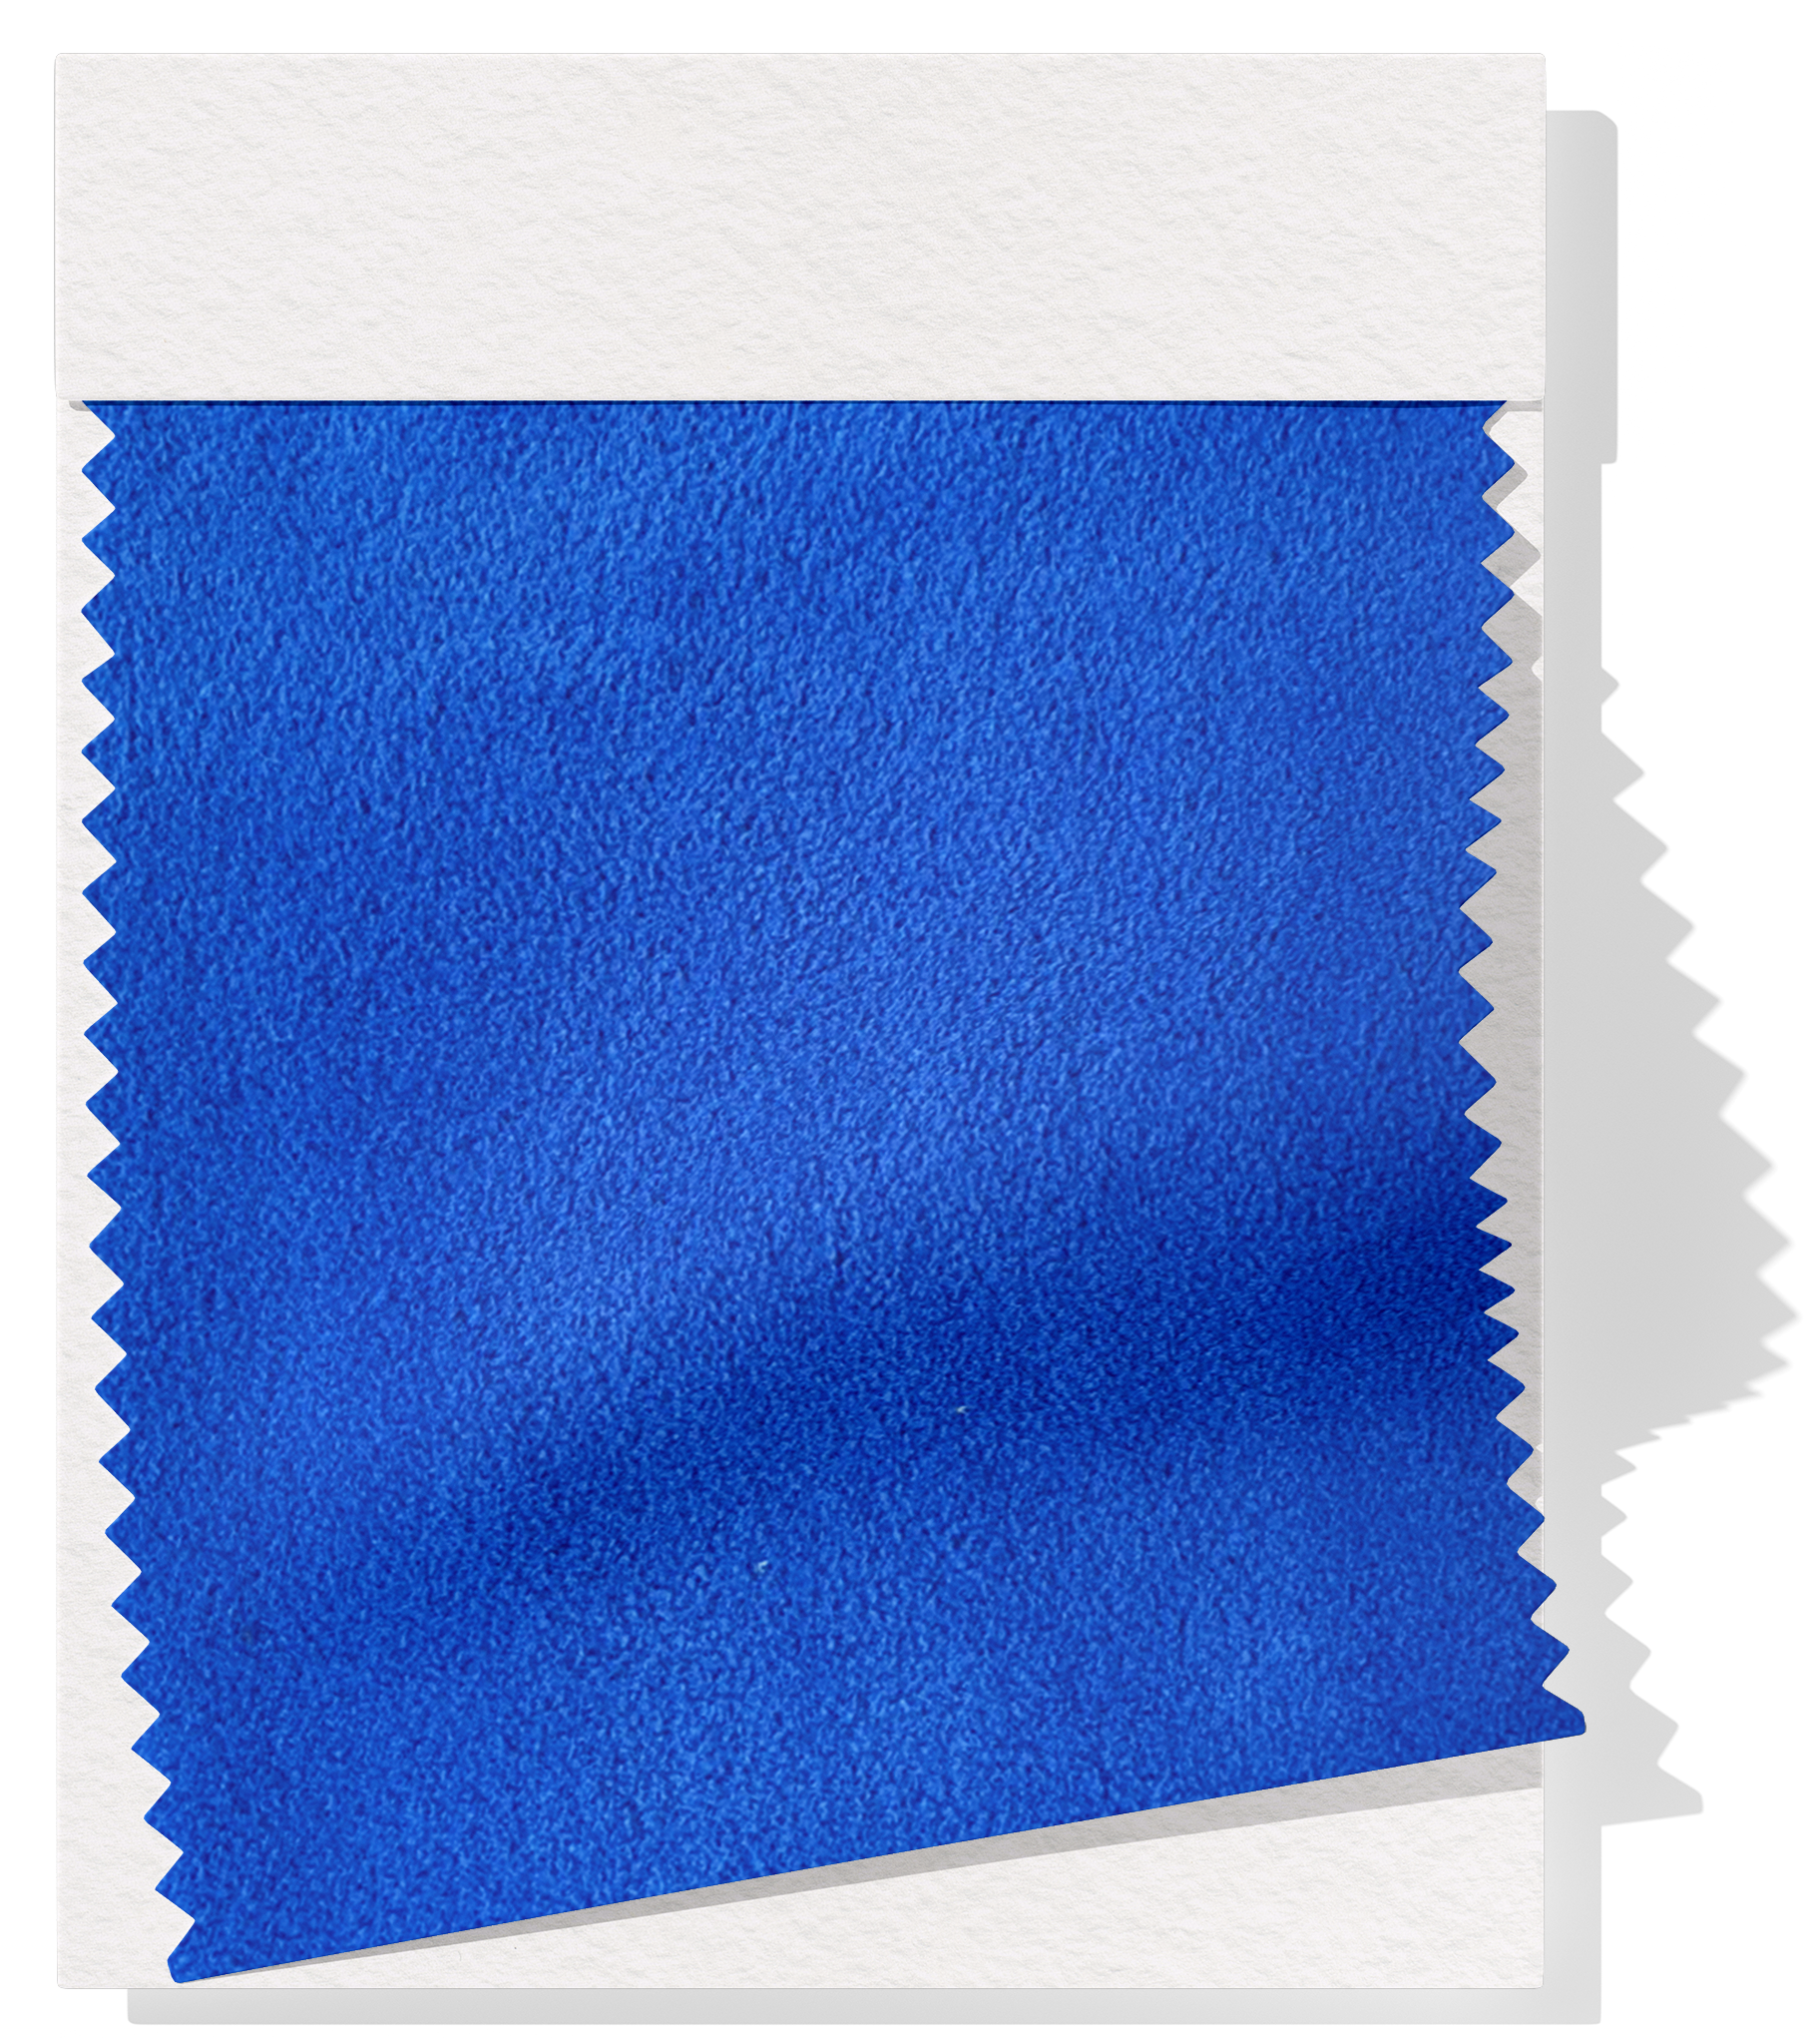 Polar Fleece $12.00p/m - Royal Blue